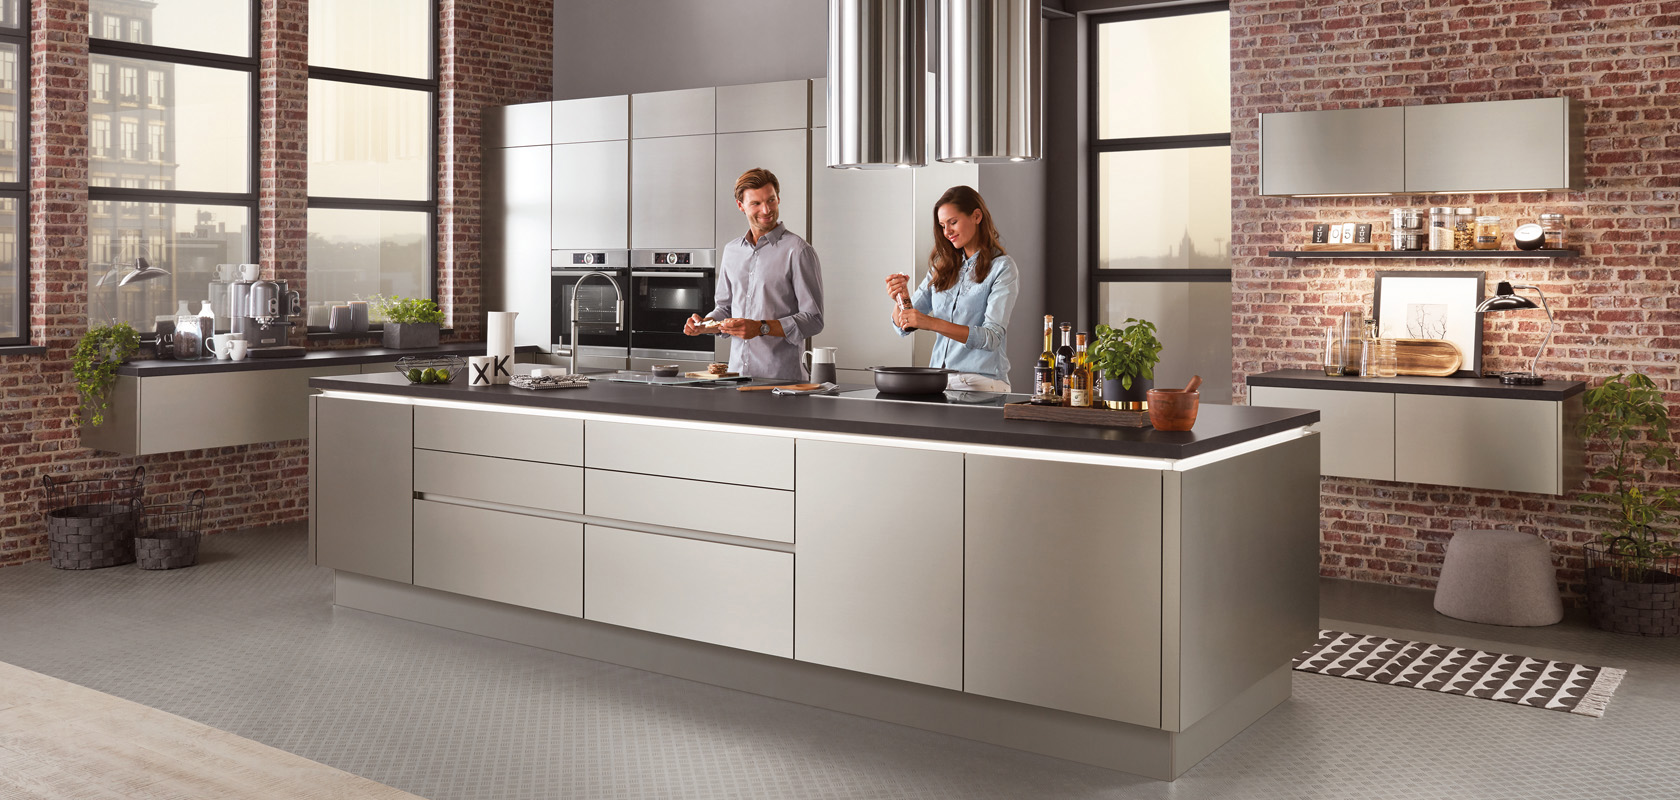 Un entorno de cocina moderna con una pareja cocinando juntos, con electrodomésticos de acero inoxidable, gabinetes elegantes y un fondo de pared de ladrillo de estilo industrial-chic.